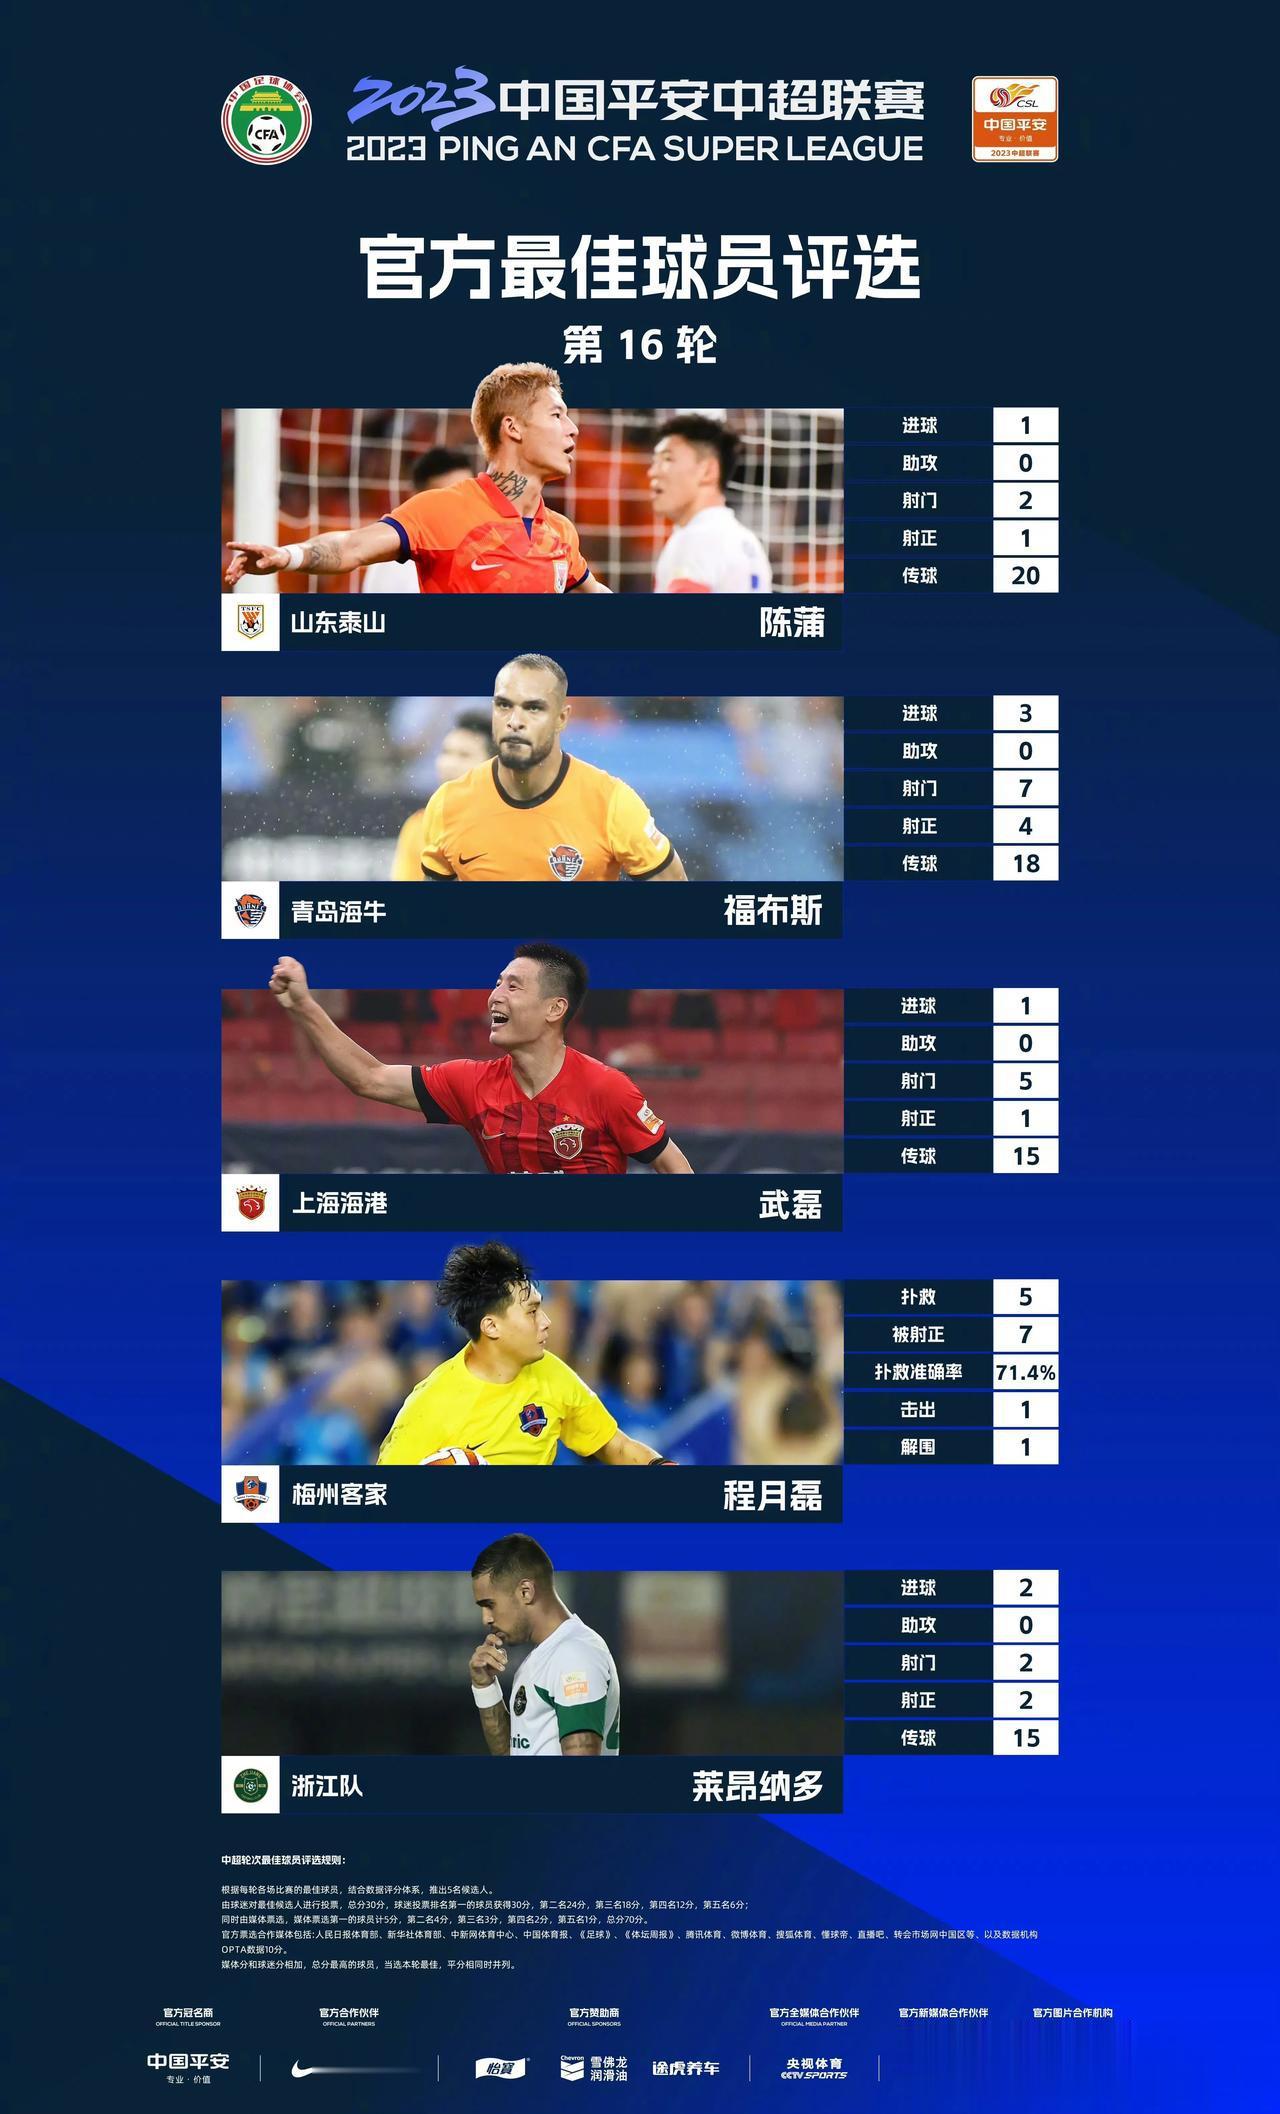  2023中国平安中超联赛第16轮官方最佳球员评选

入围本轮评选的五位球员是：(1)